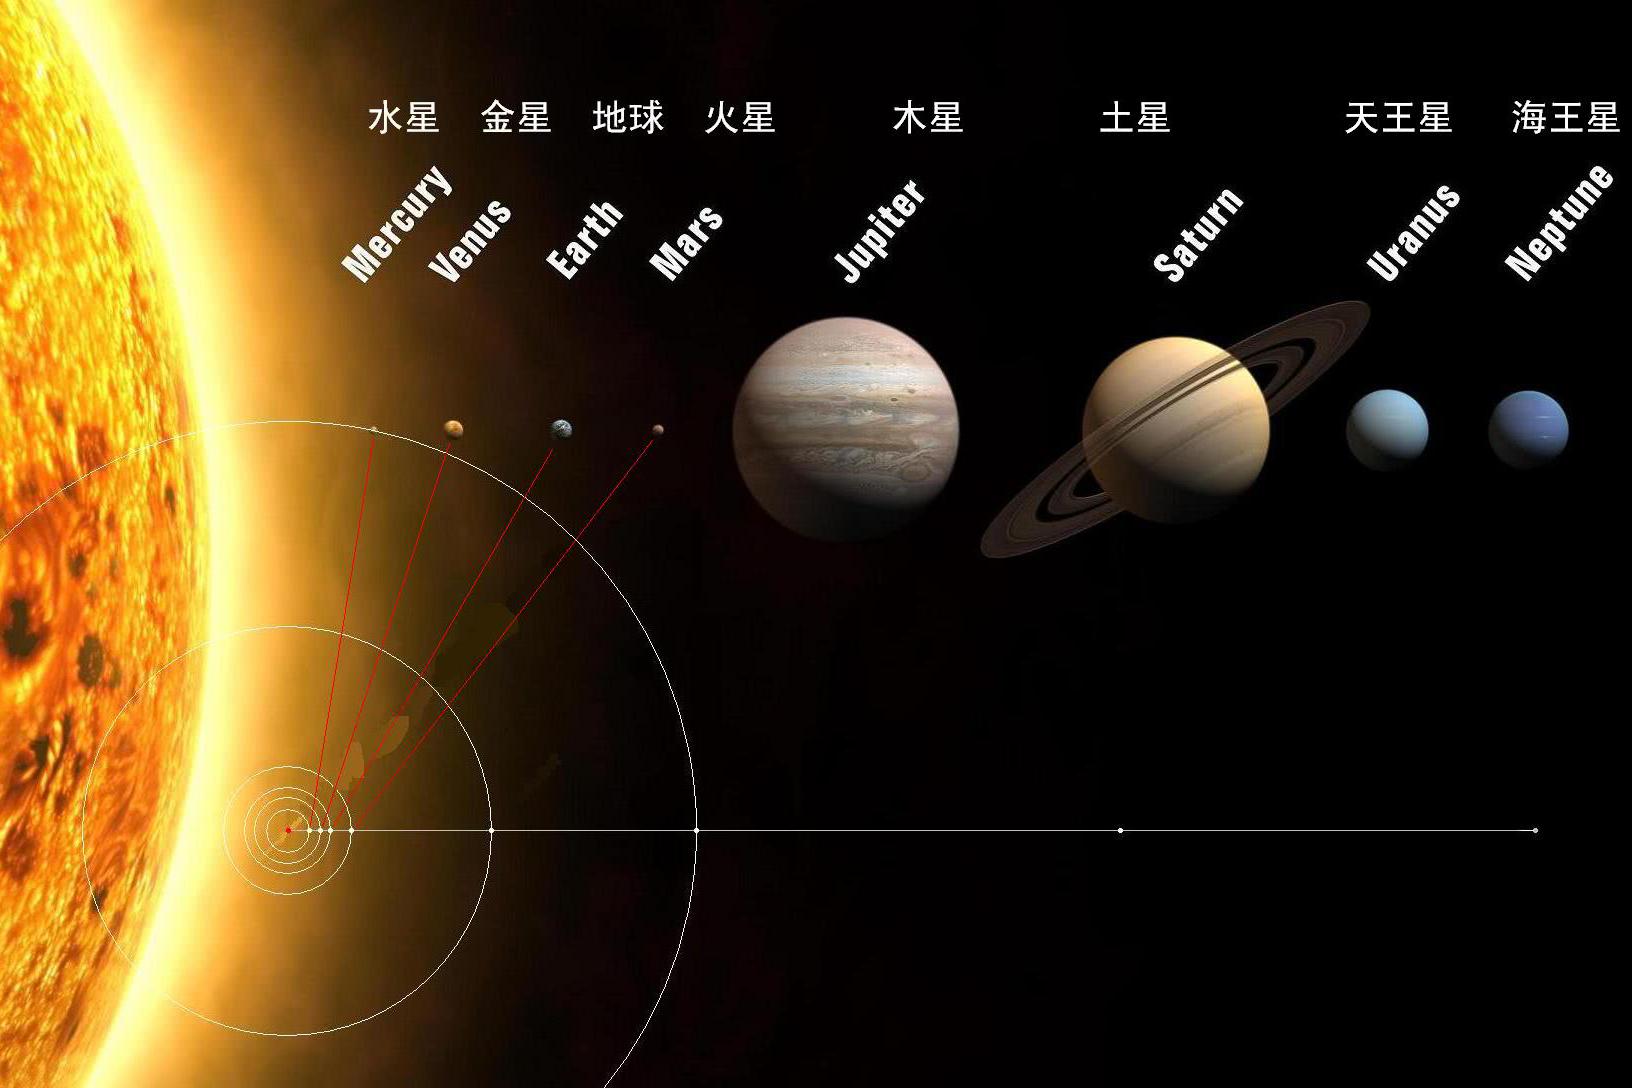 到底为啥太阳系只有八大行星?原来几十亿年前发生过星球大战!